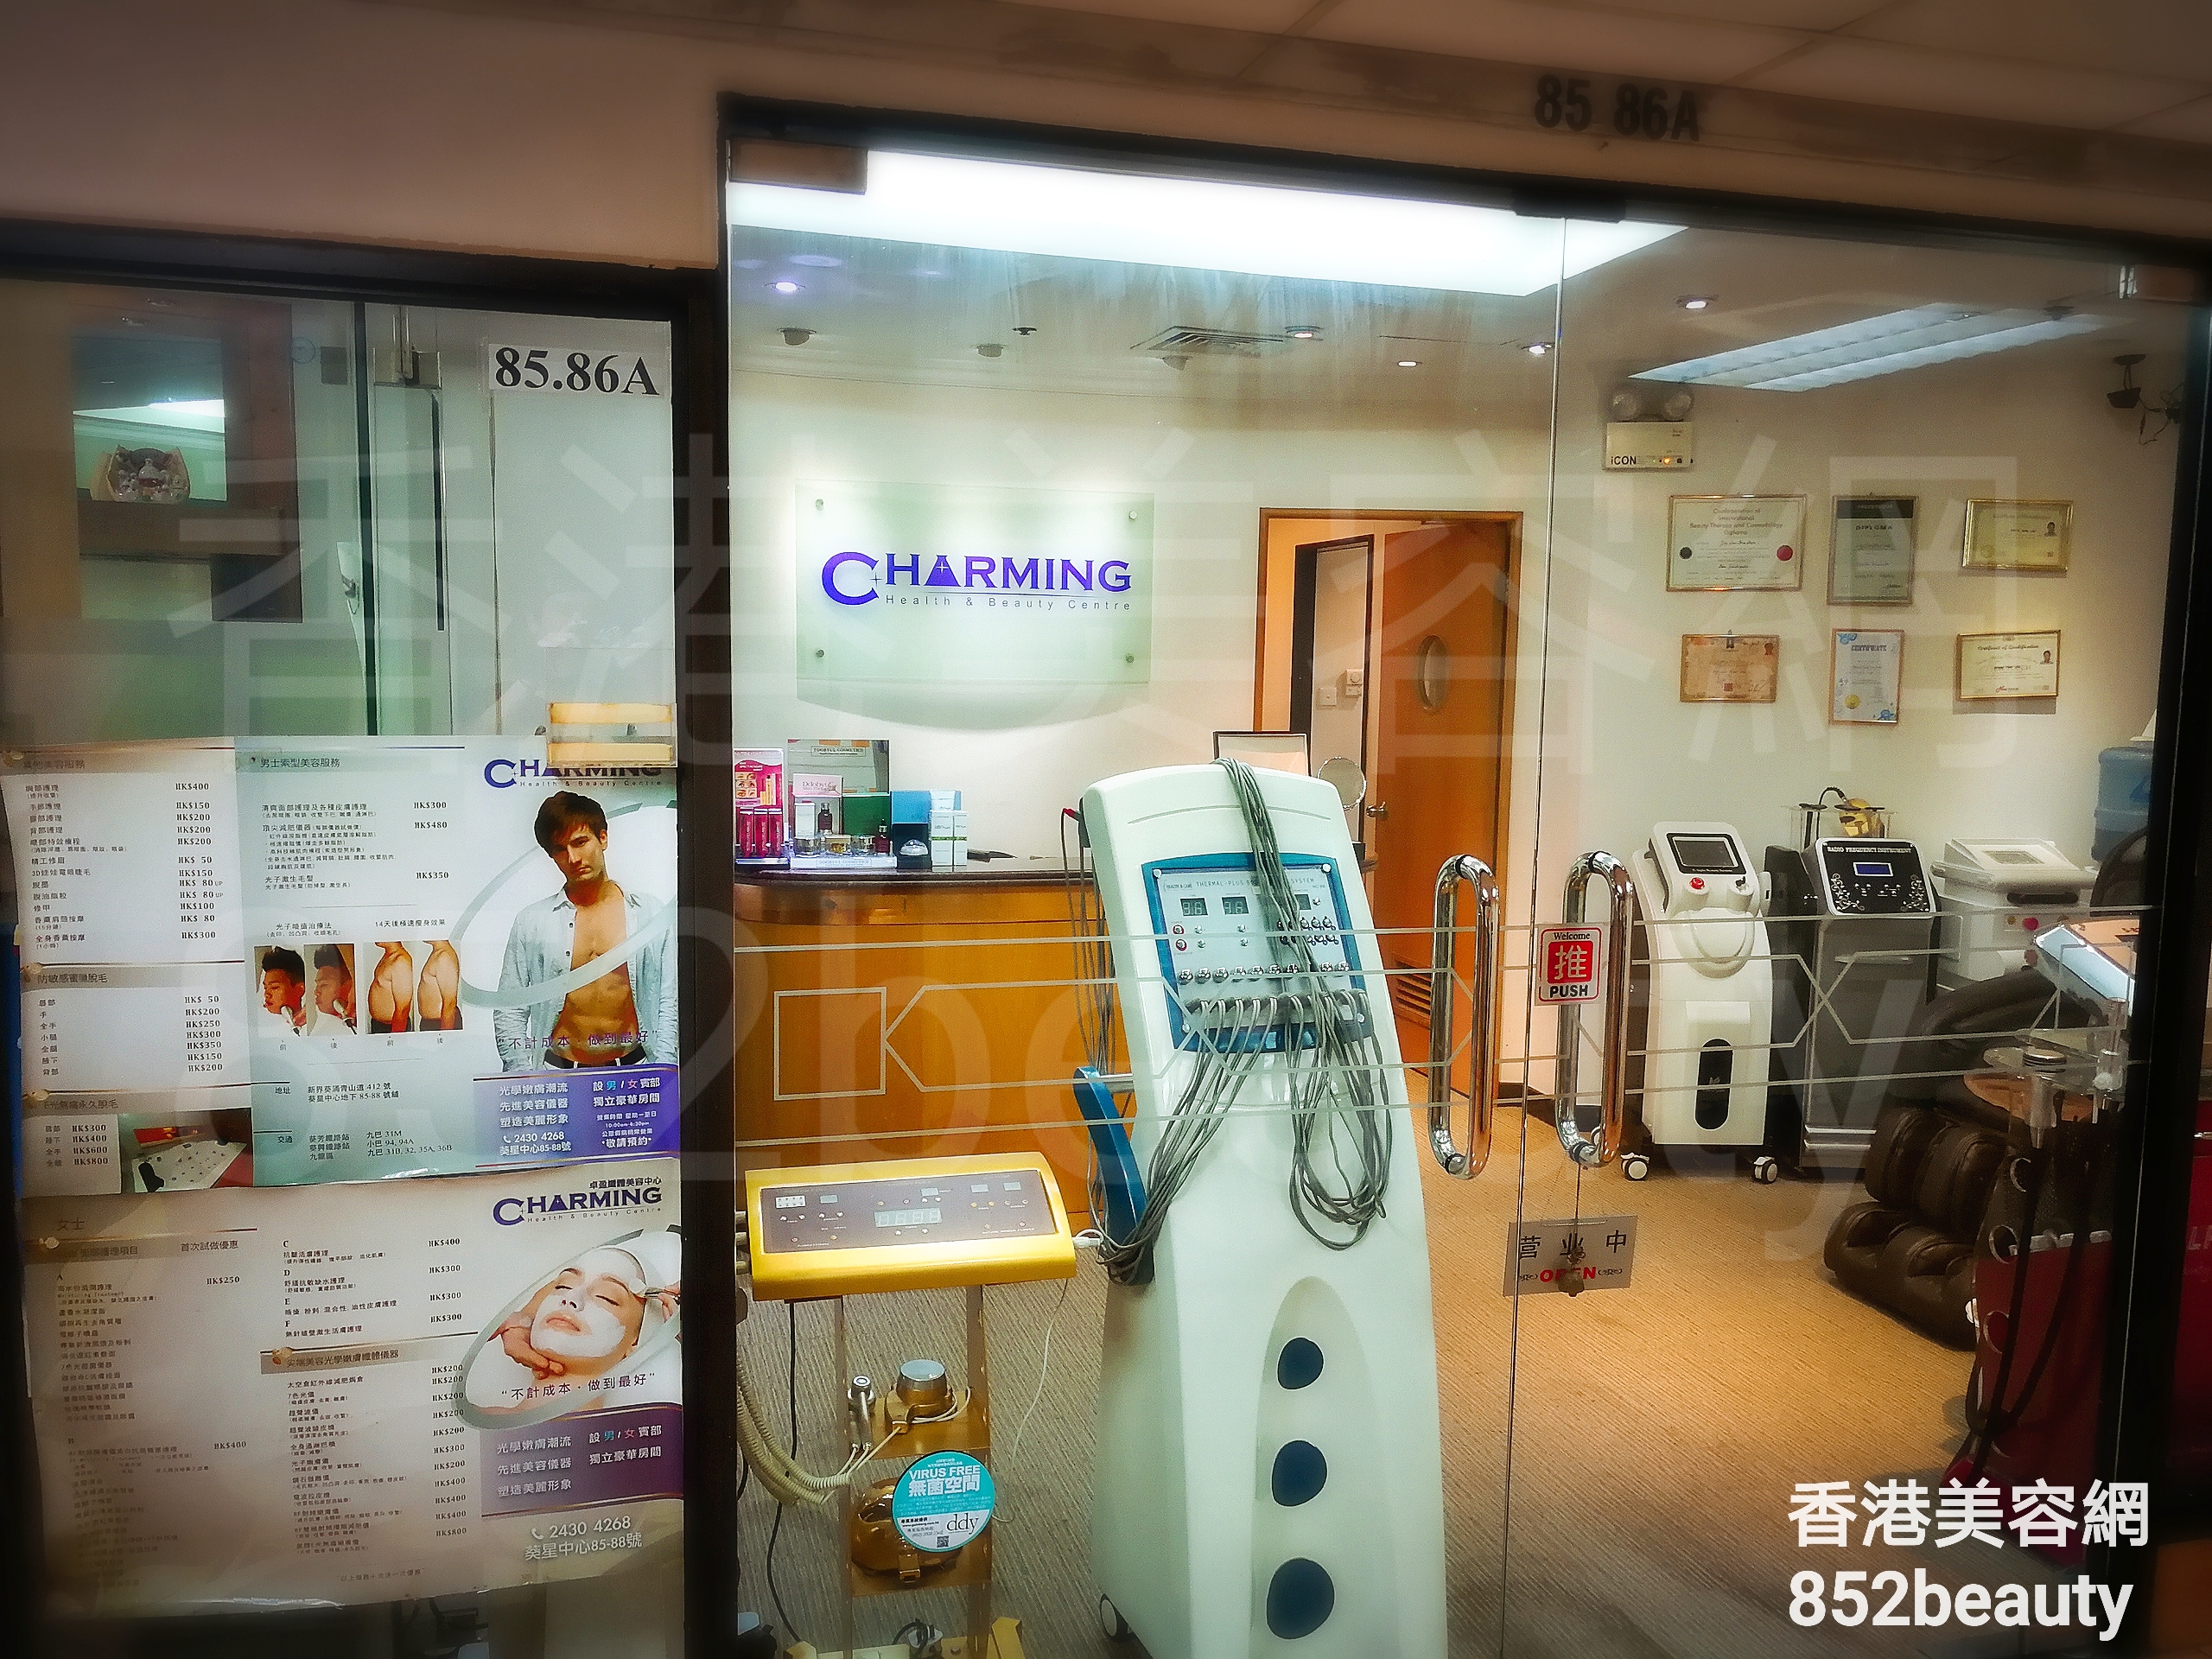 男士美容: Charming Health & Beauty Centre